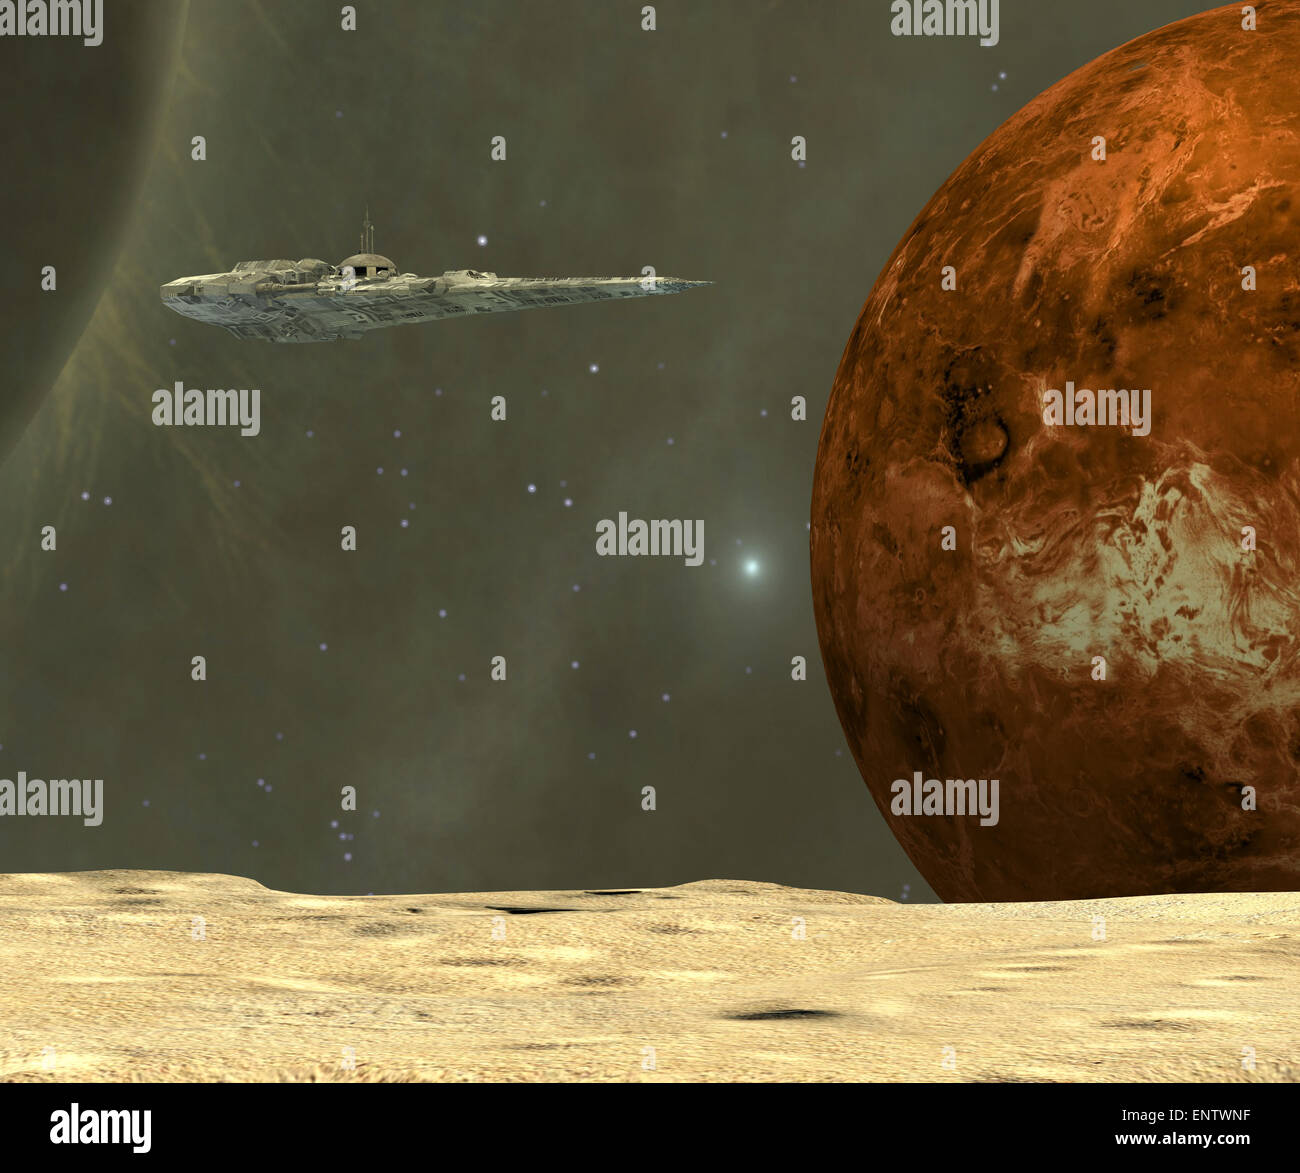 Una estrella-barco visita uno de los asteroides cerca del planeta de mercurio durante un viaje de investigación al interior del sistema solar. Foto de stock